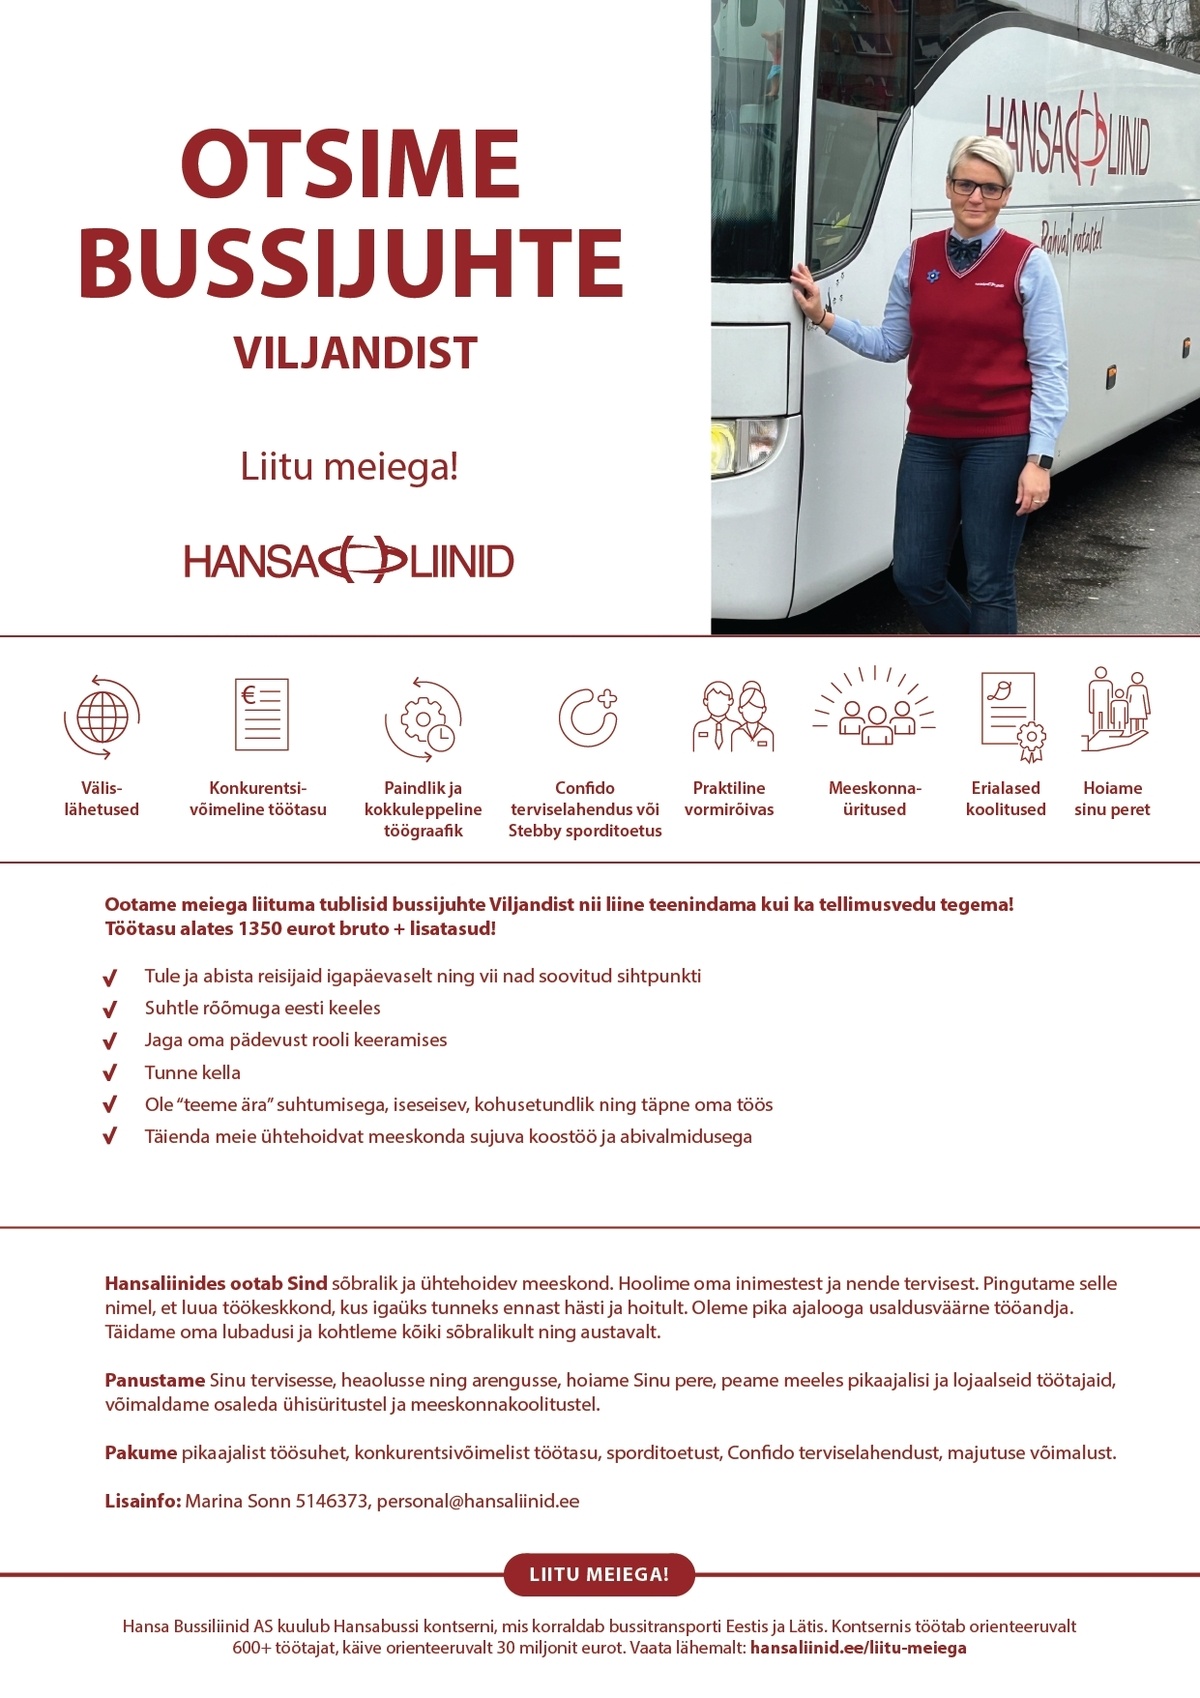 Hansa Bussiliinid Bussijuht kommerts- ja TEL-vedudele